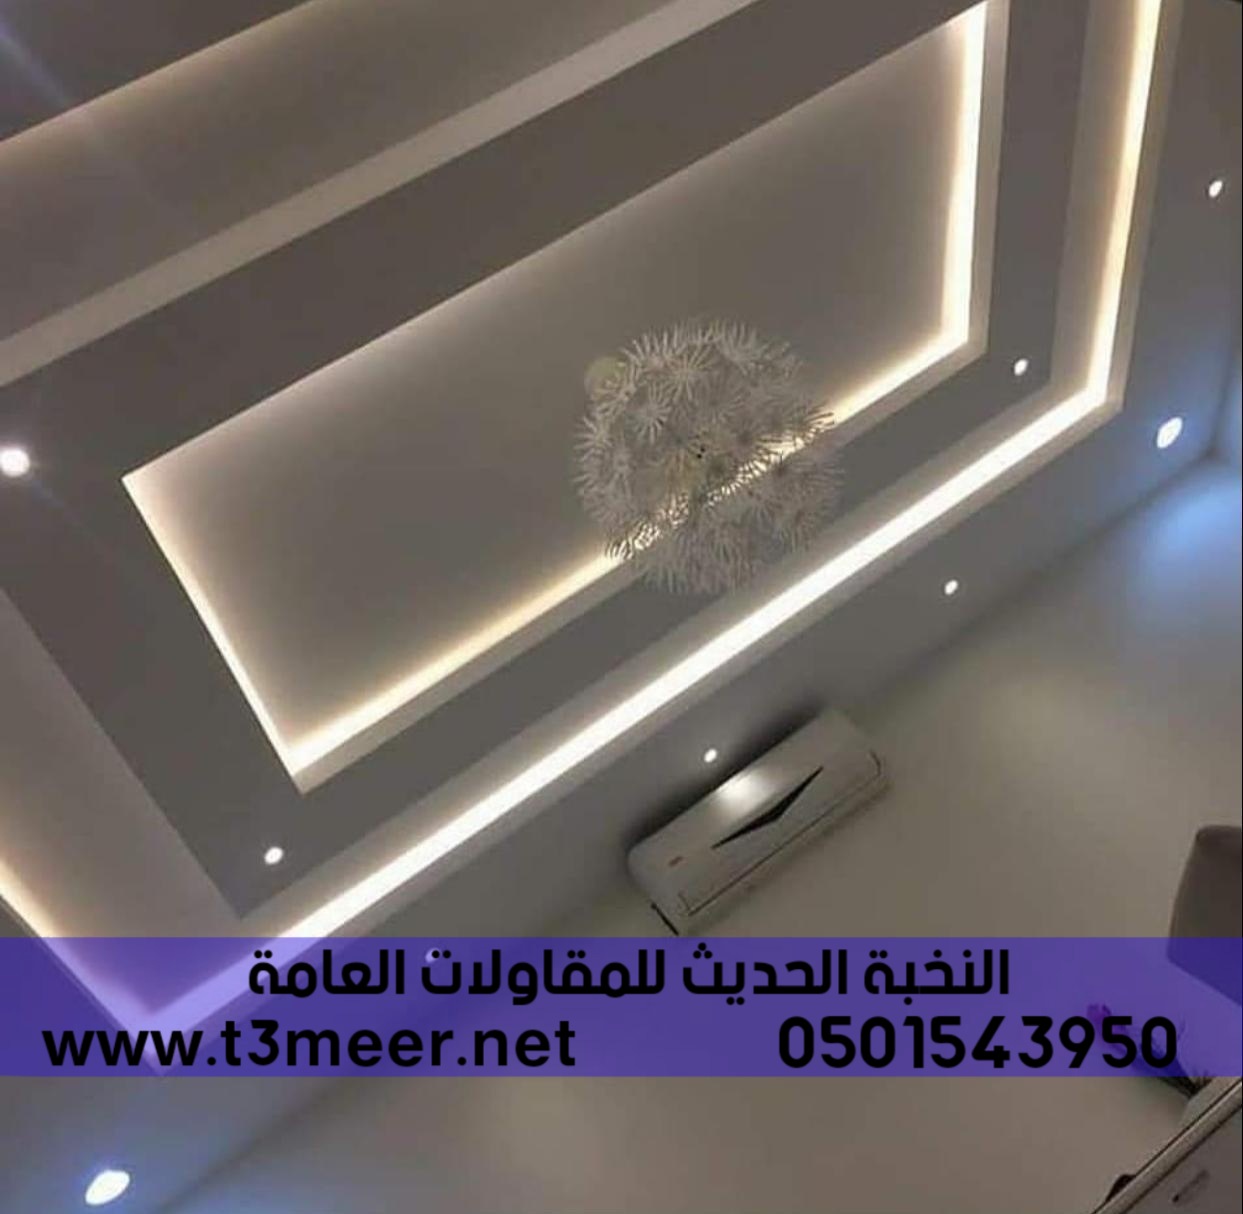 تشطيب منازل و بناء عظم في الرياض , 0501543950 P_24317fx1v2